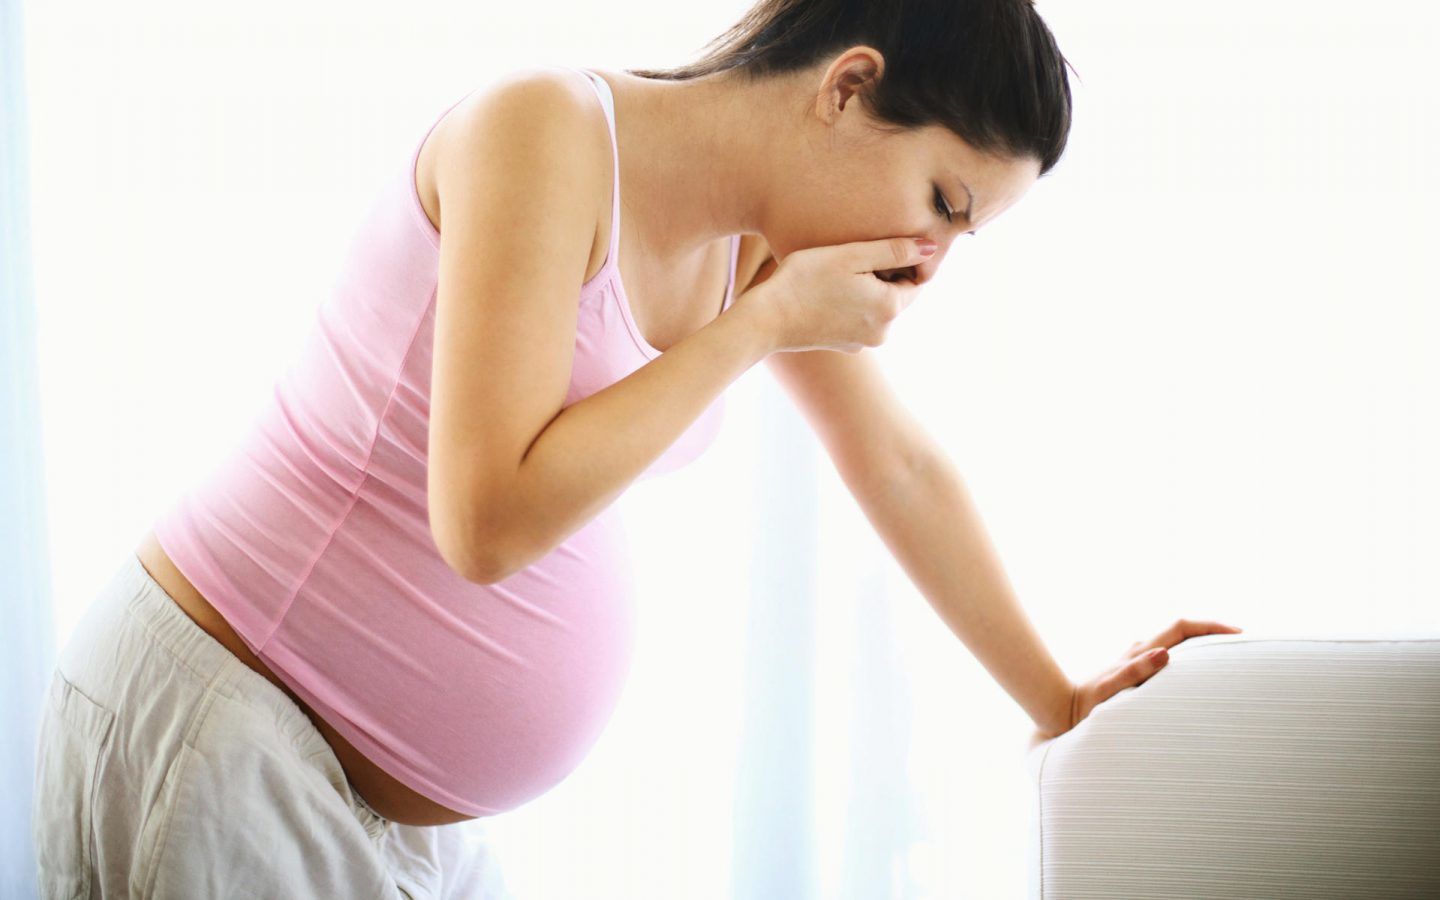 القيء الحملي المفرط: الأسباب والأعراض والتشخيص والعلاج